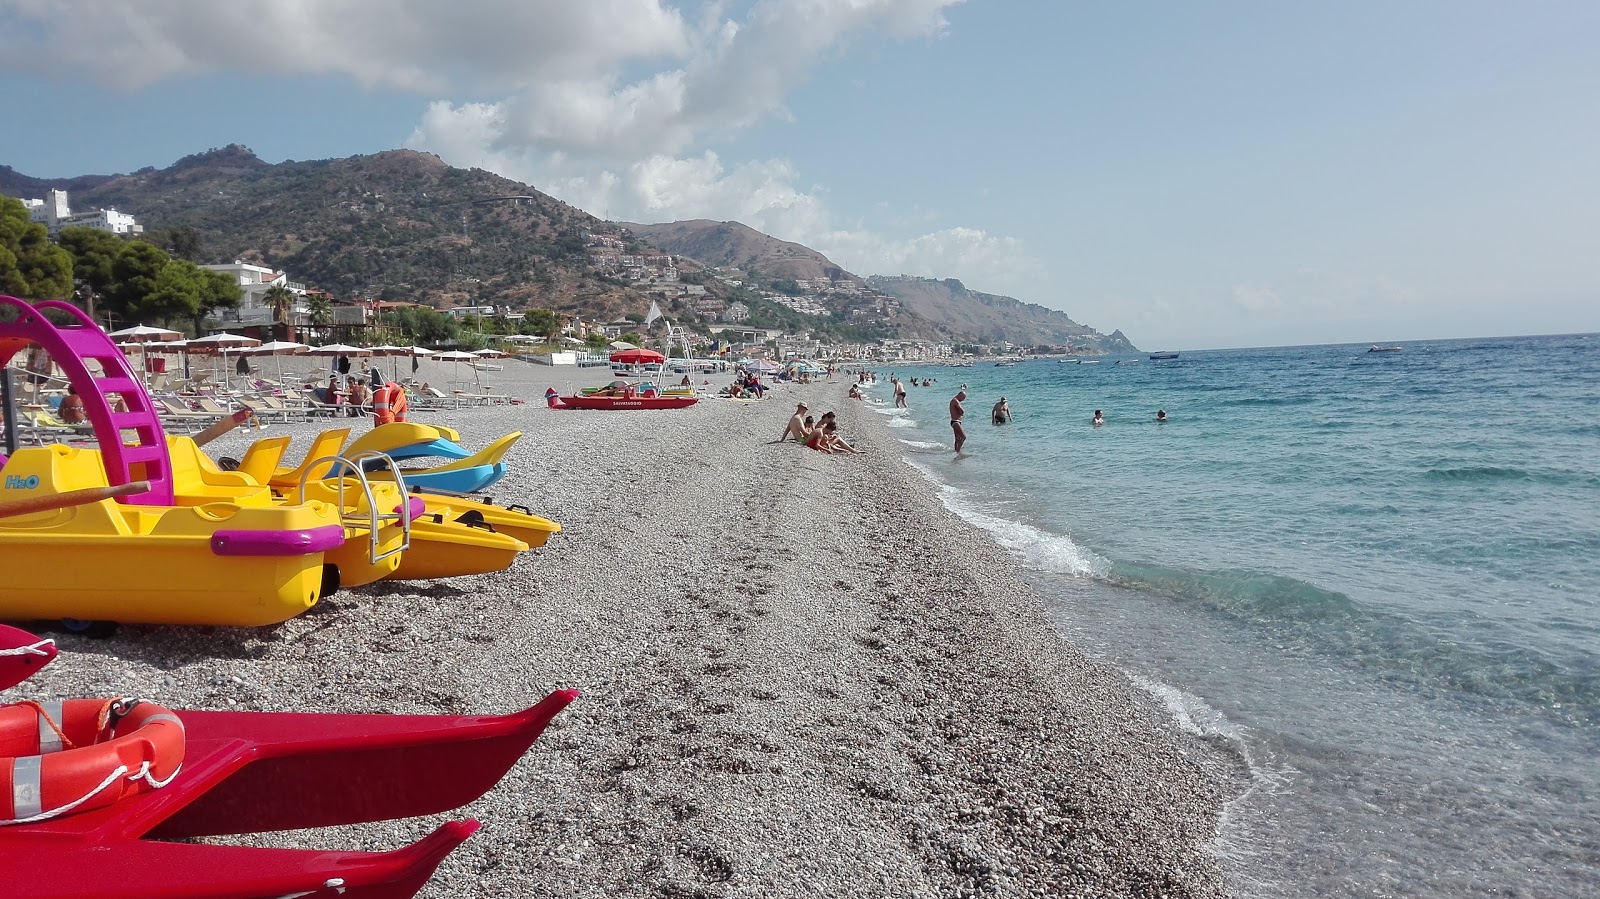 Foto von Spiaggia di Mazzeo - beliebter Ort unter Entspannungskennern